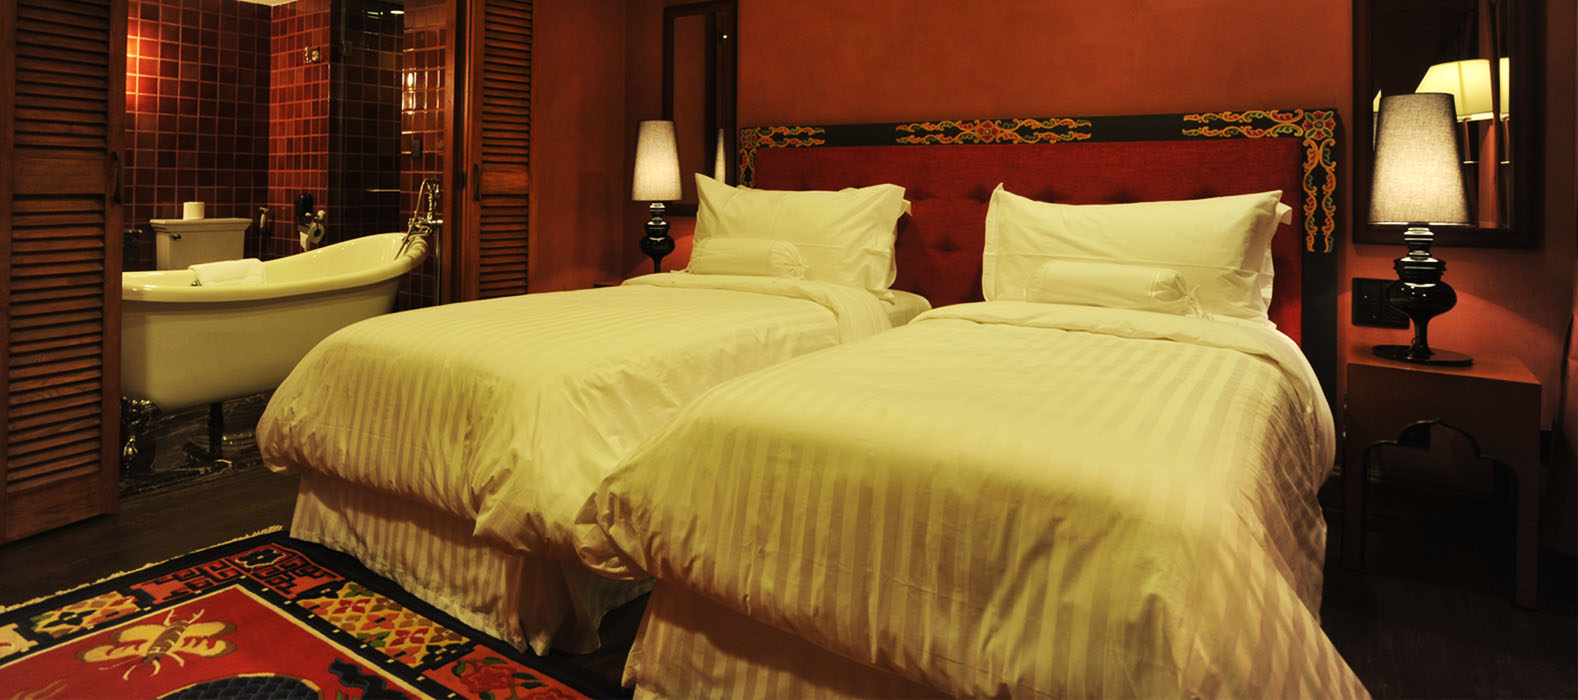 Bedroom - Druk Hotel